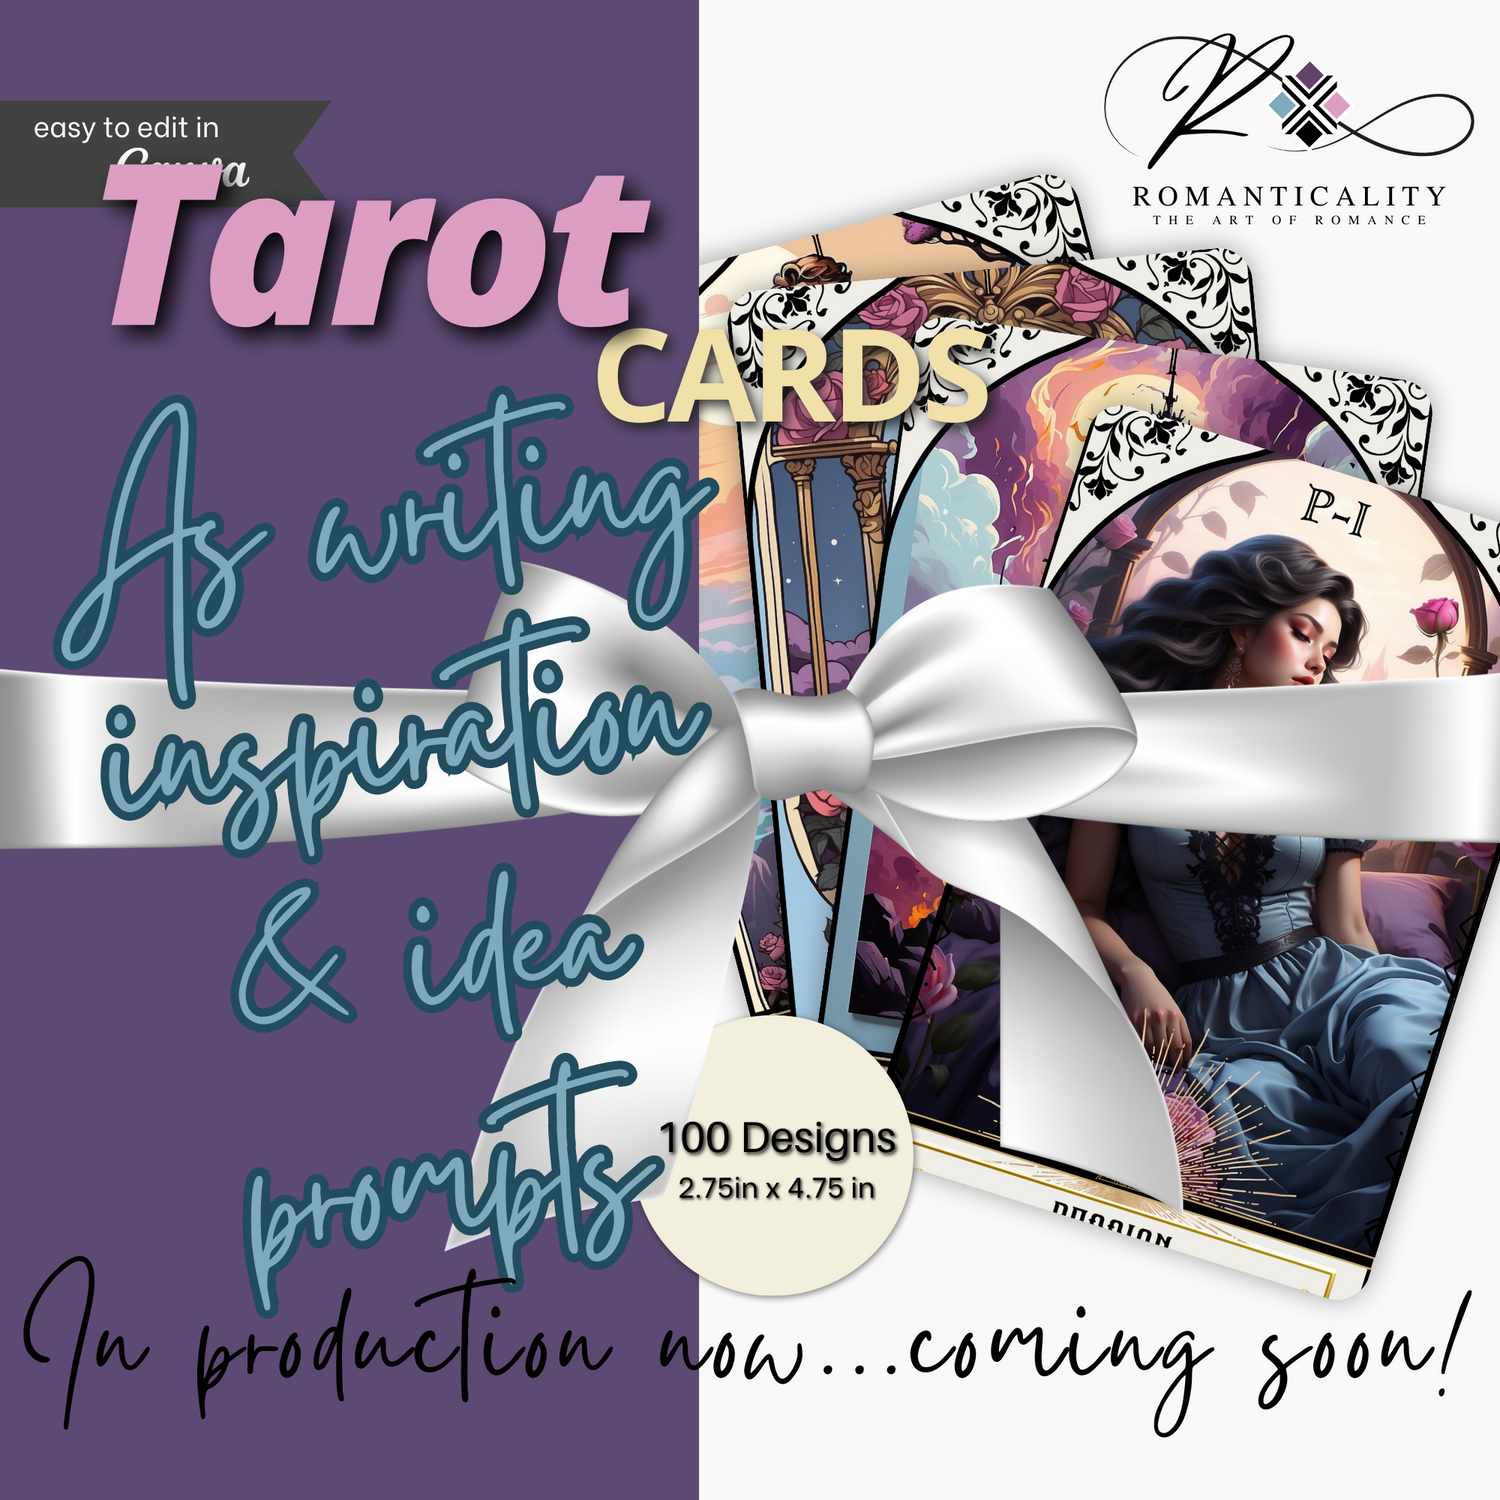 TAROT DECK & CARDS